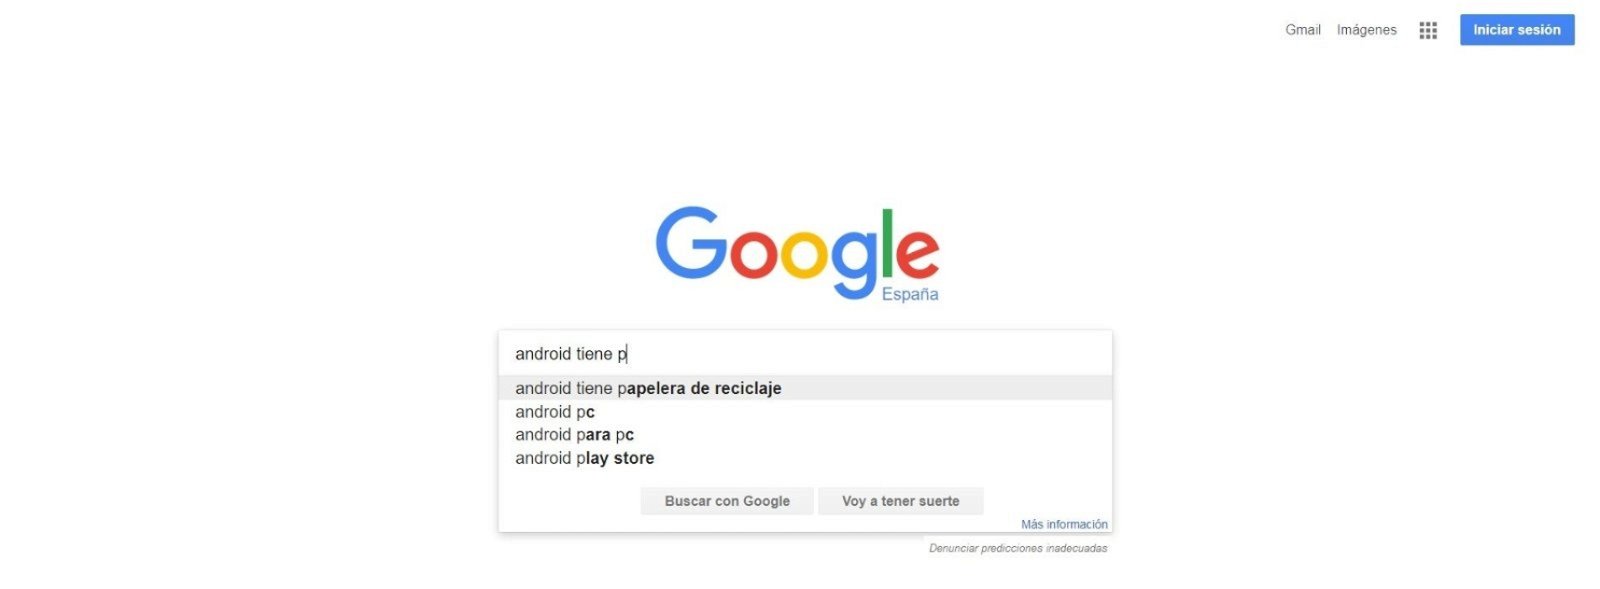 Android tiene papelera de reciclaje